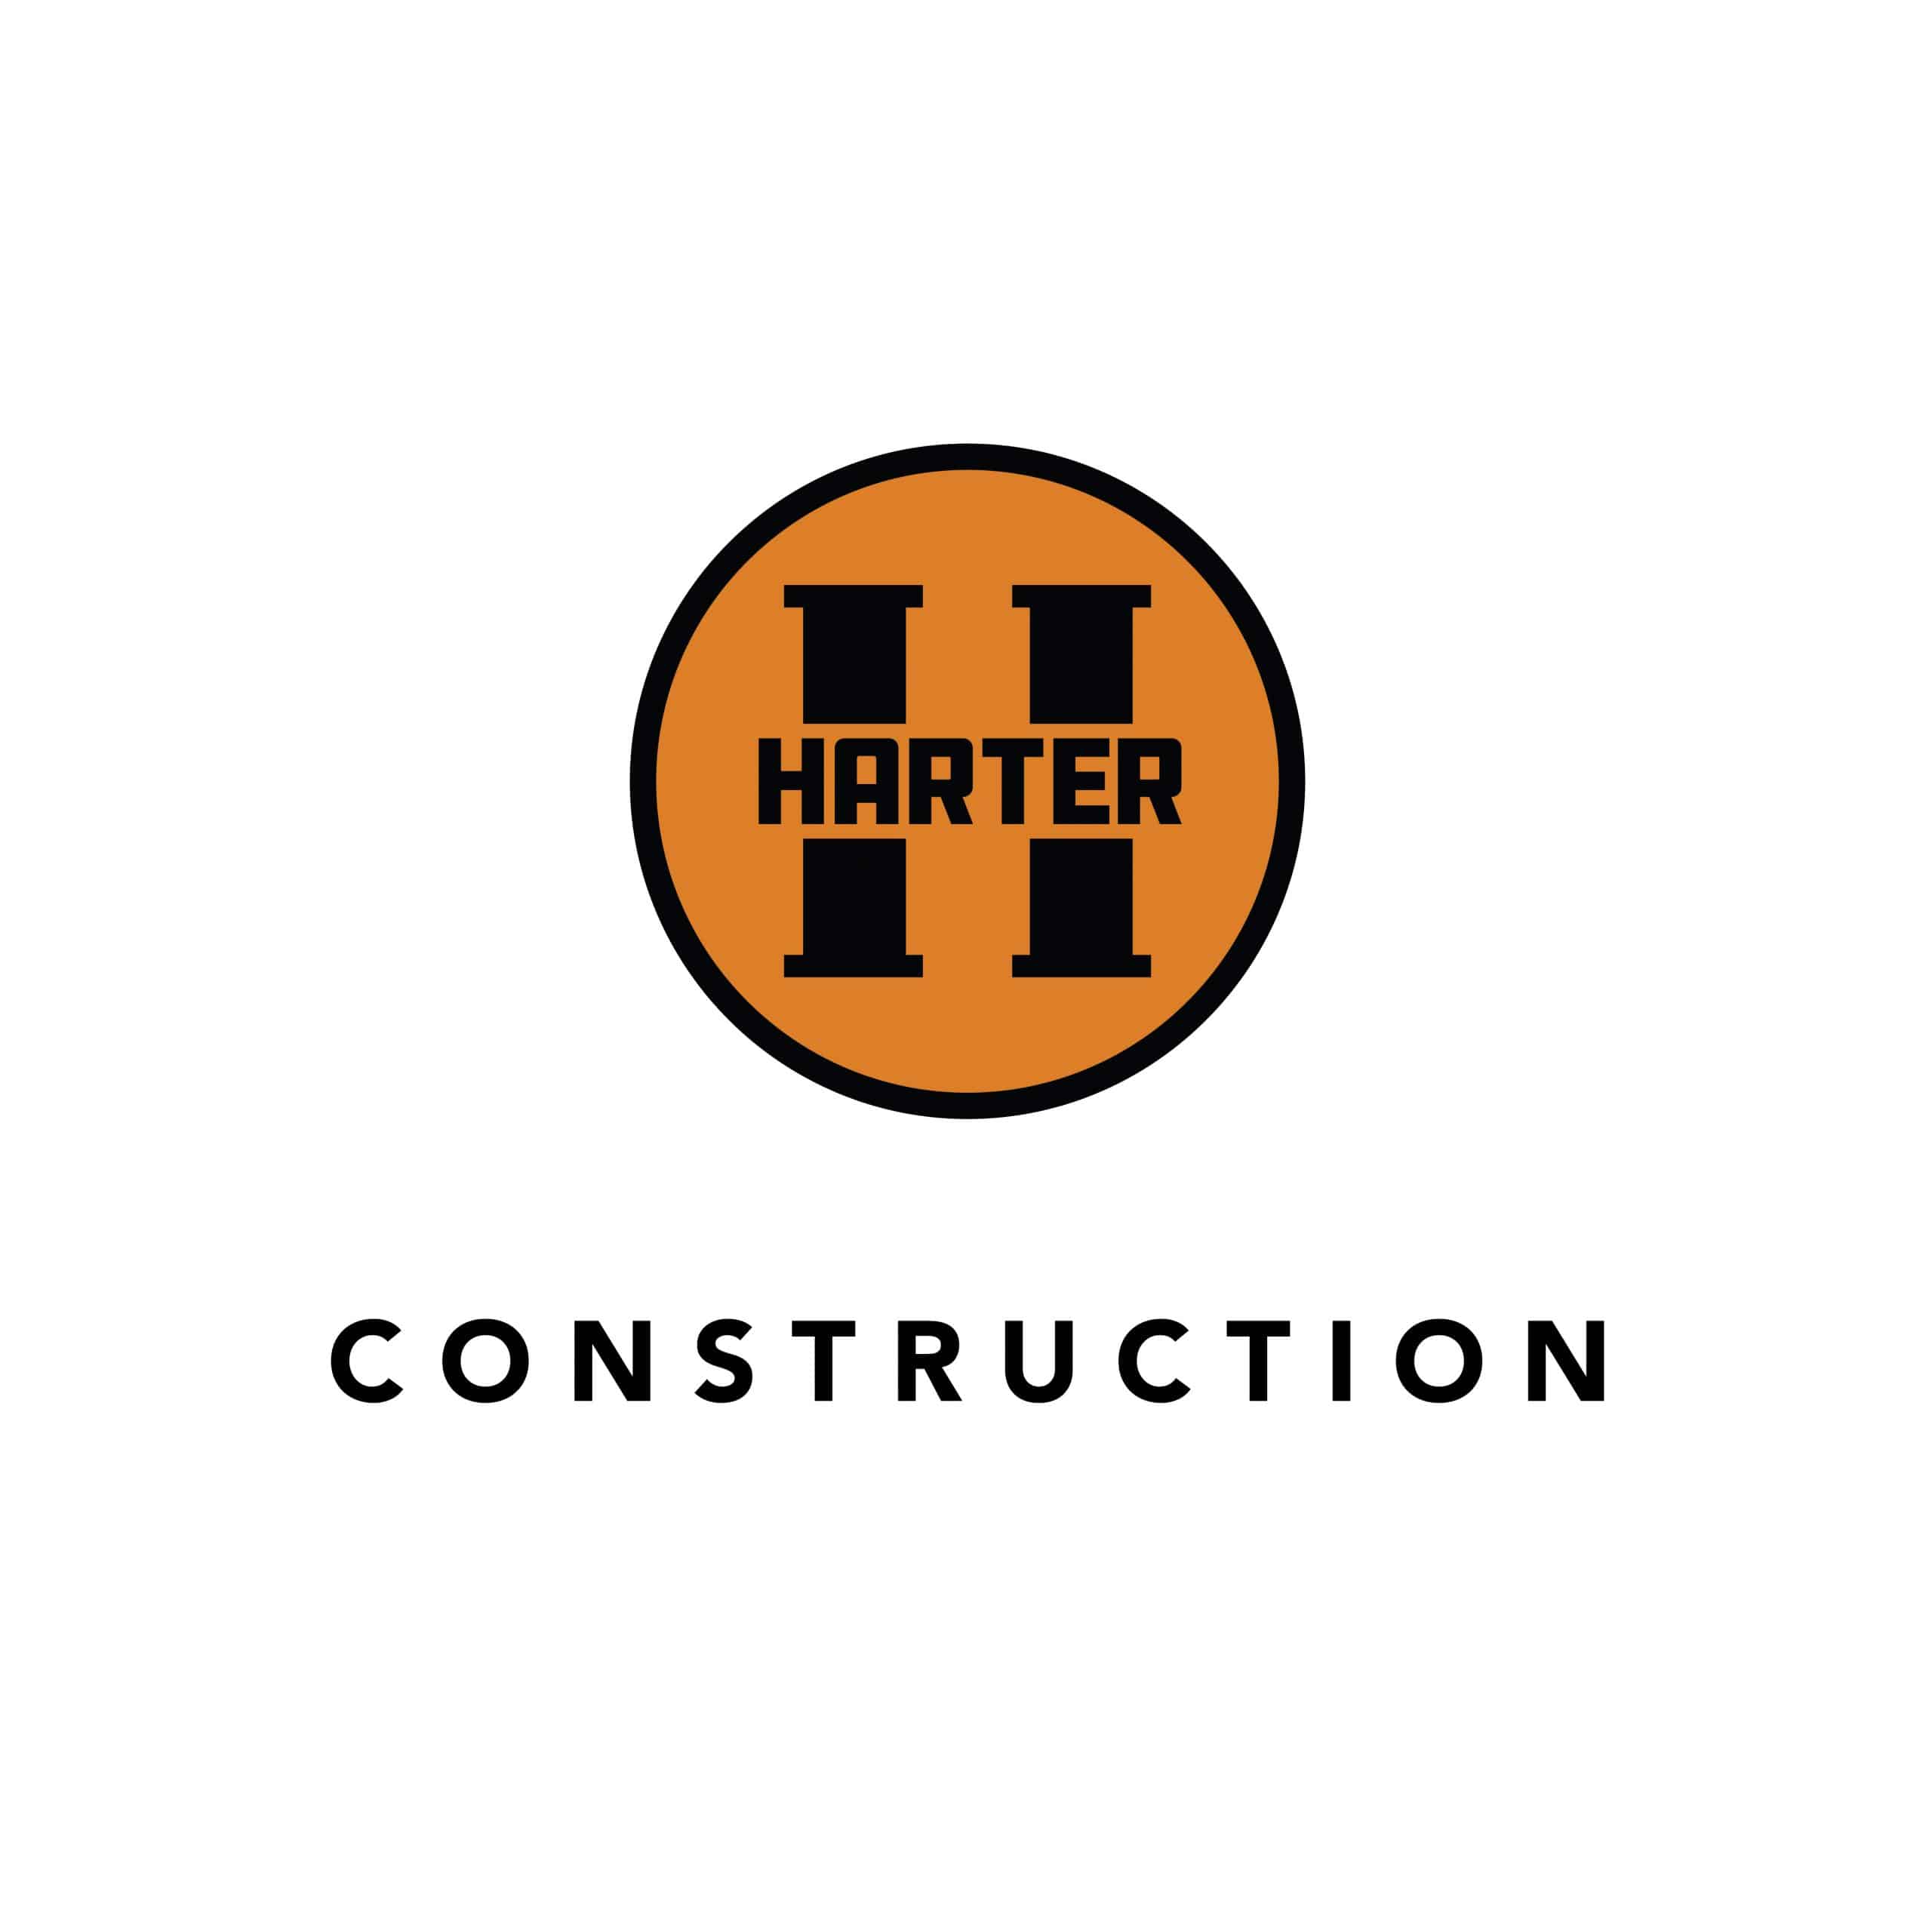 Harter_Construction_Logos_By_Stellen_Design-04